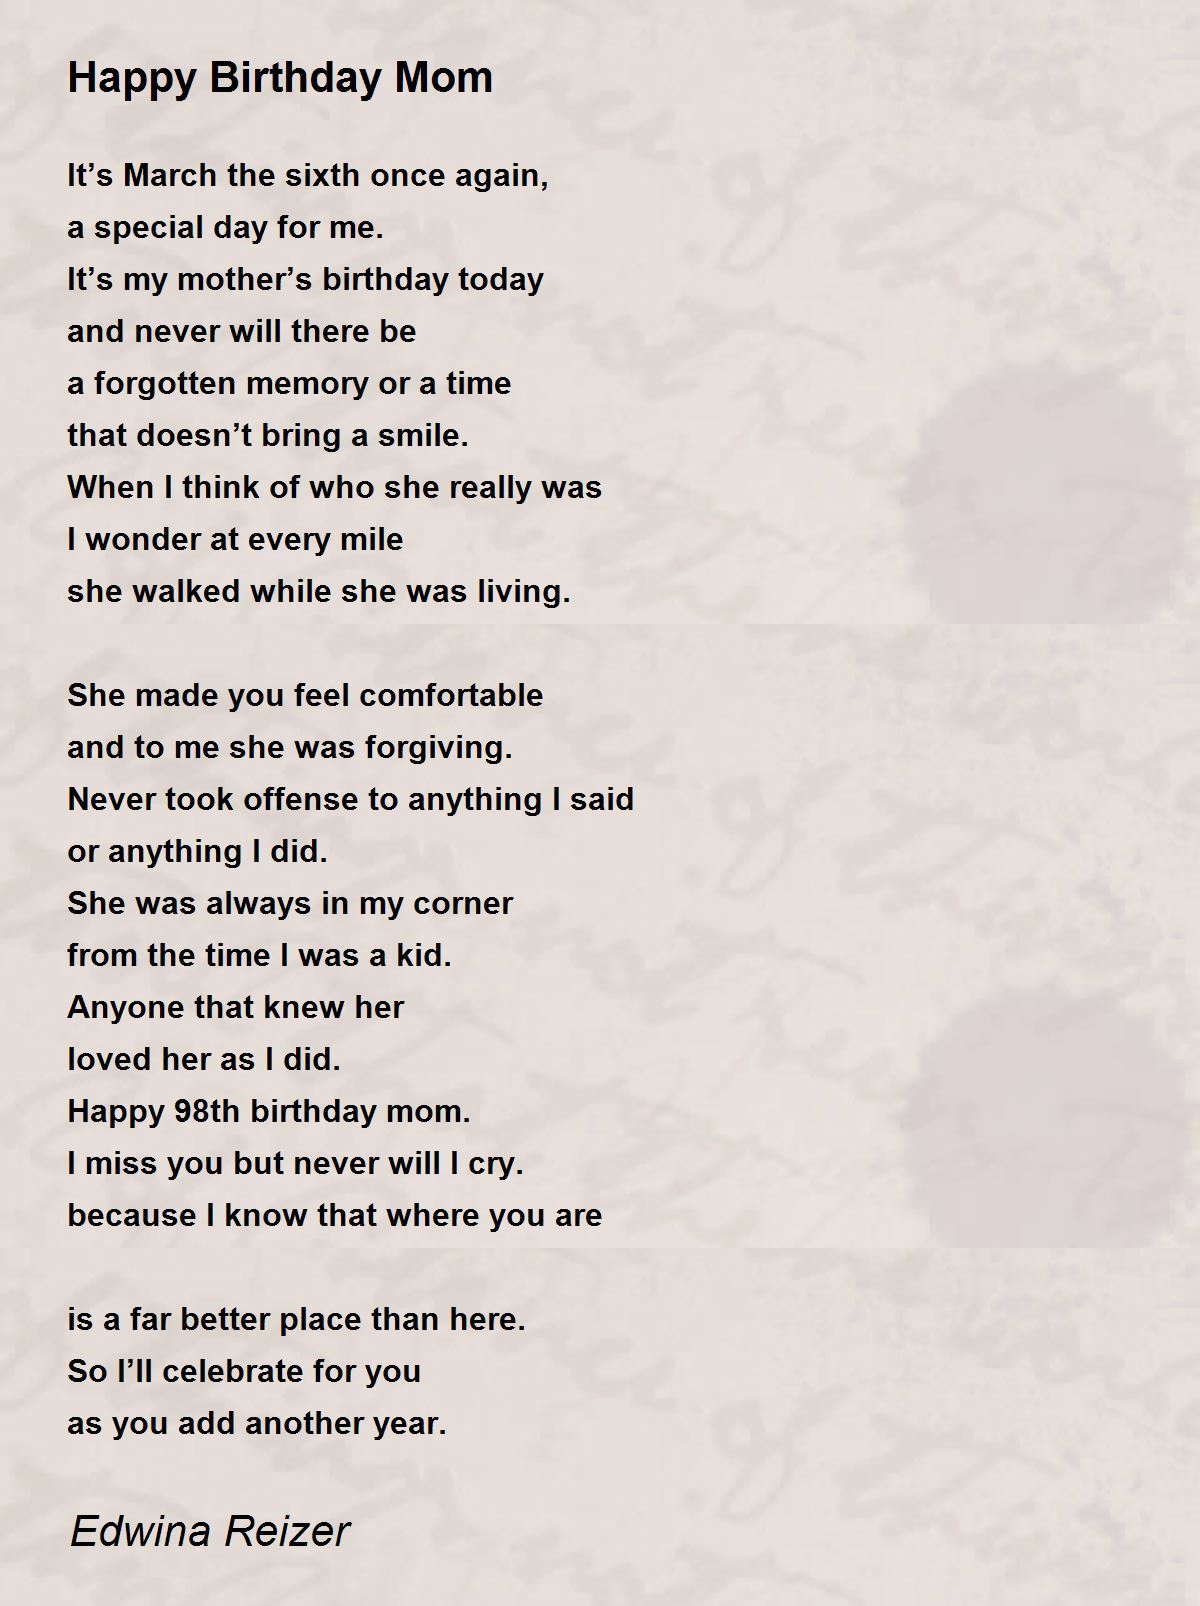 Happy Birthday Mom - Happy Birthday Mom Poem by Edwina Reizer